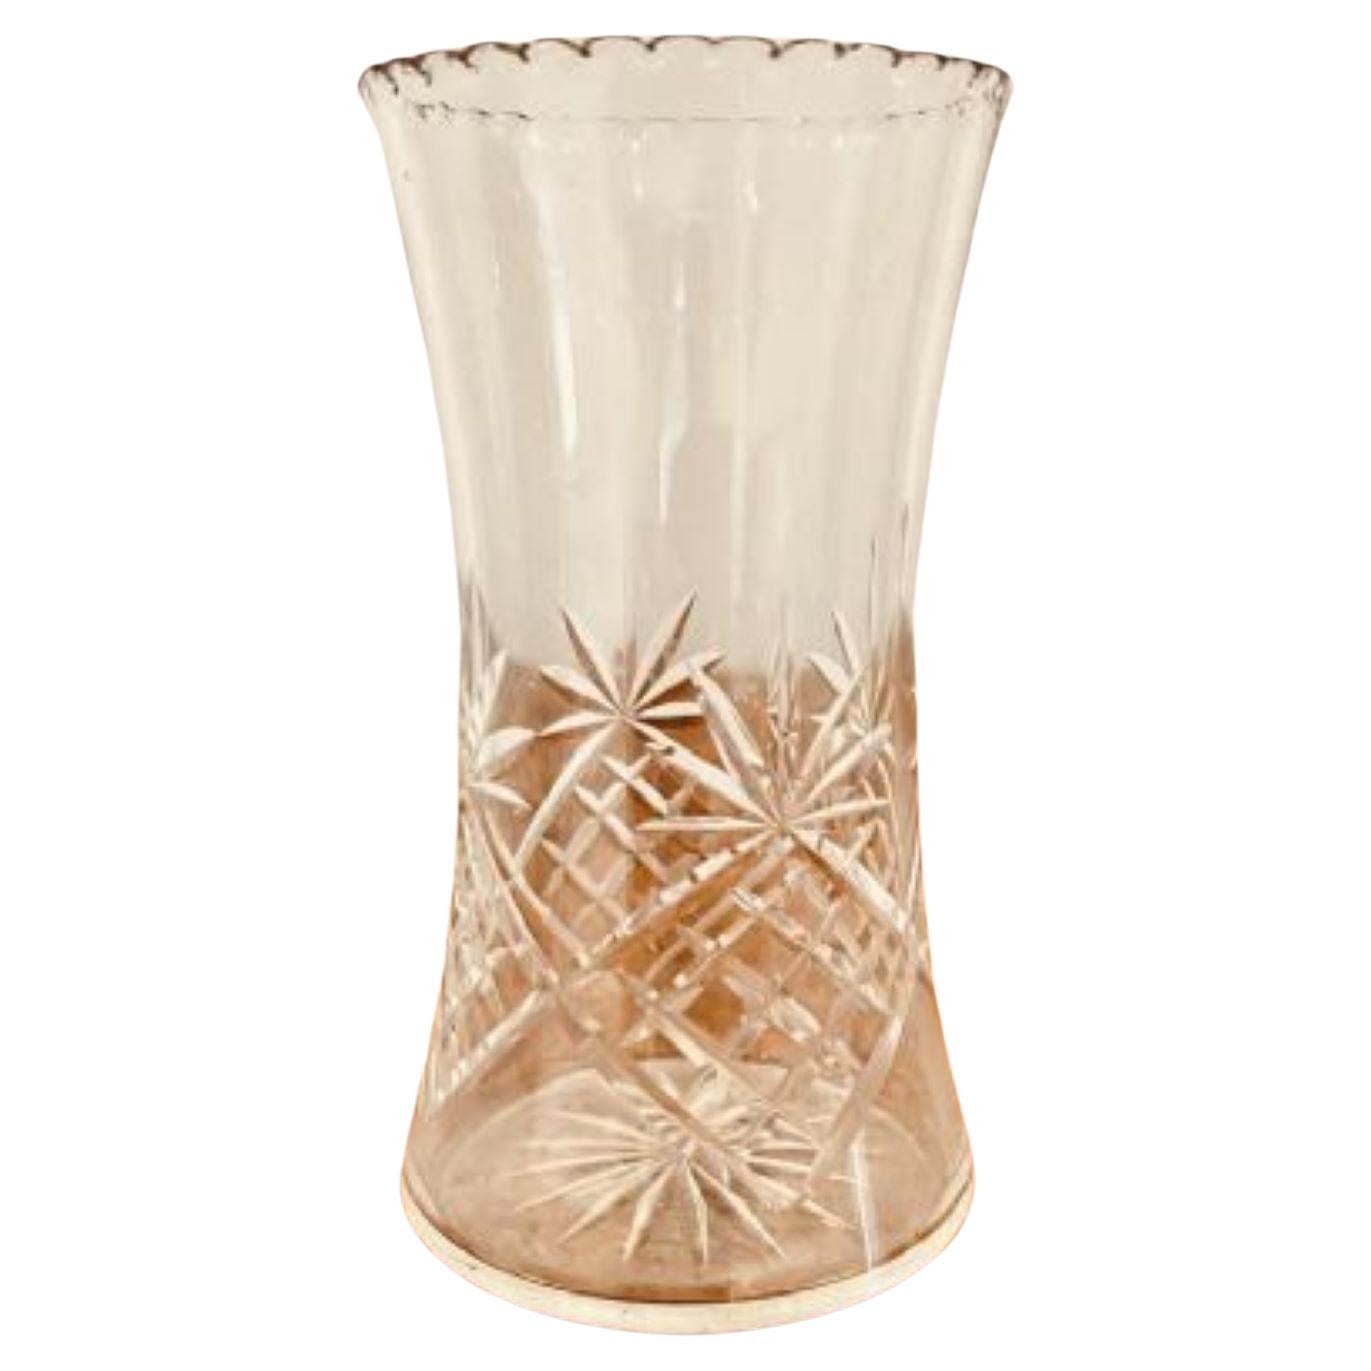 Antique Edwardian cut glass vase 